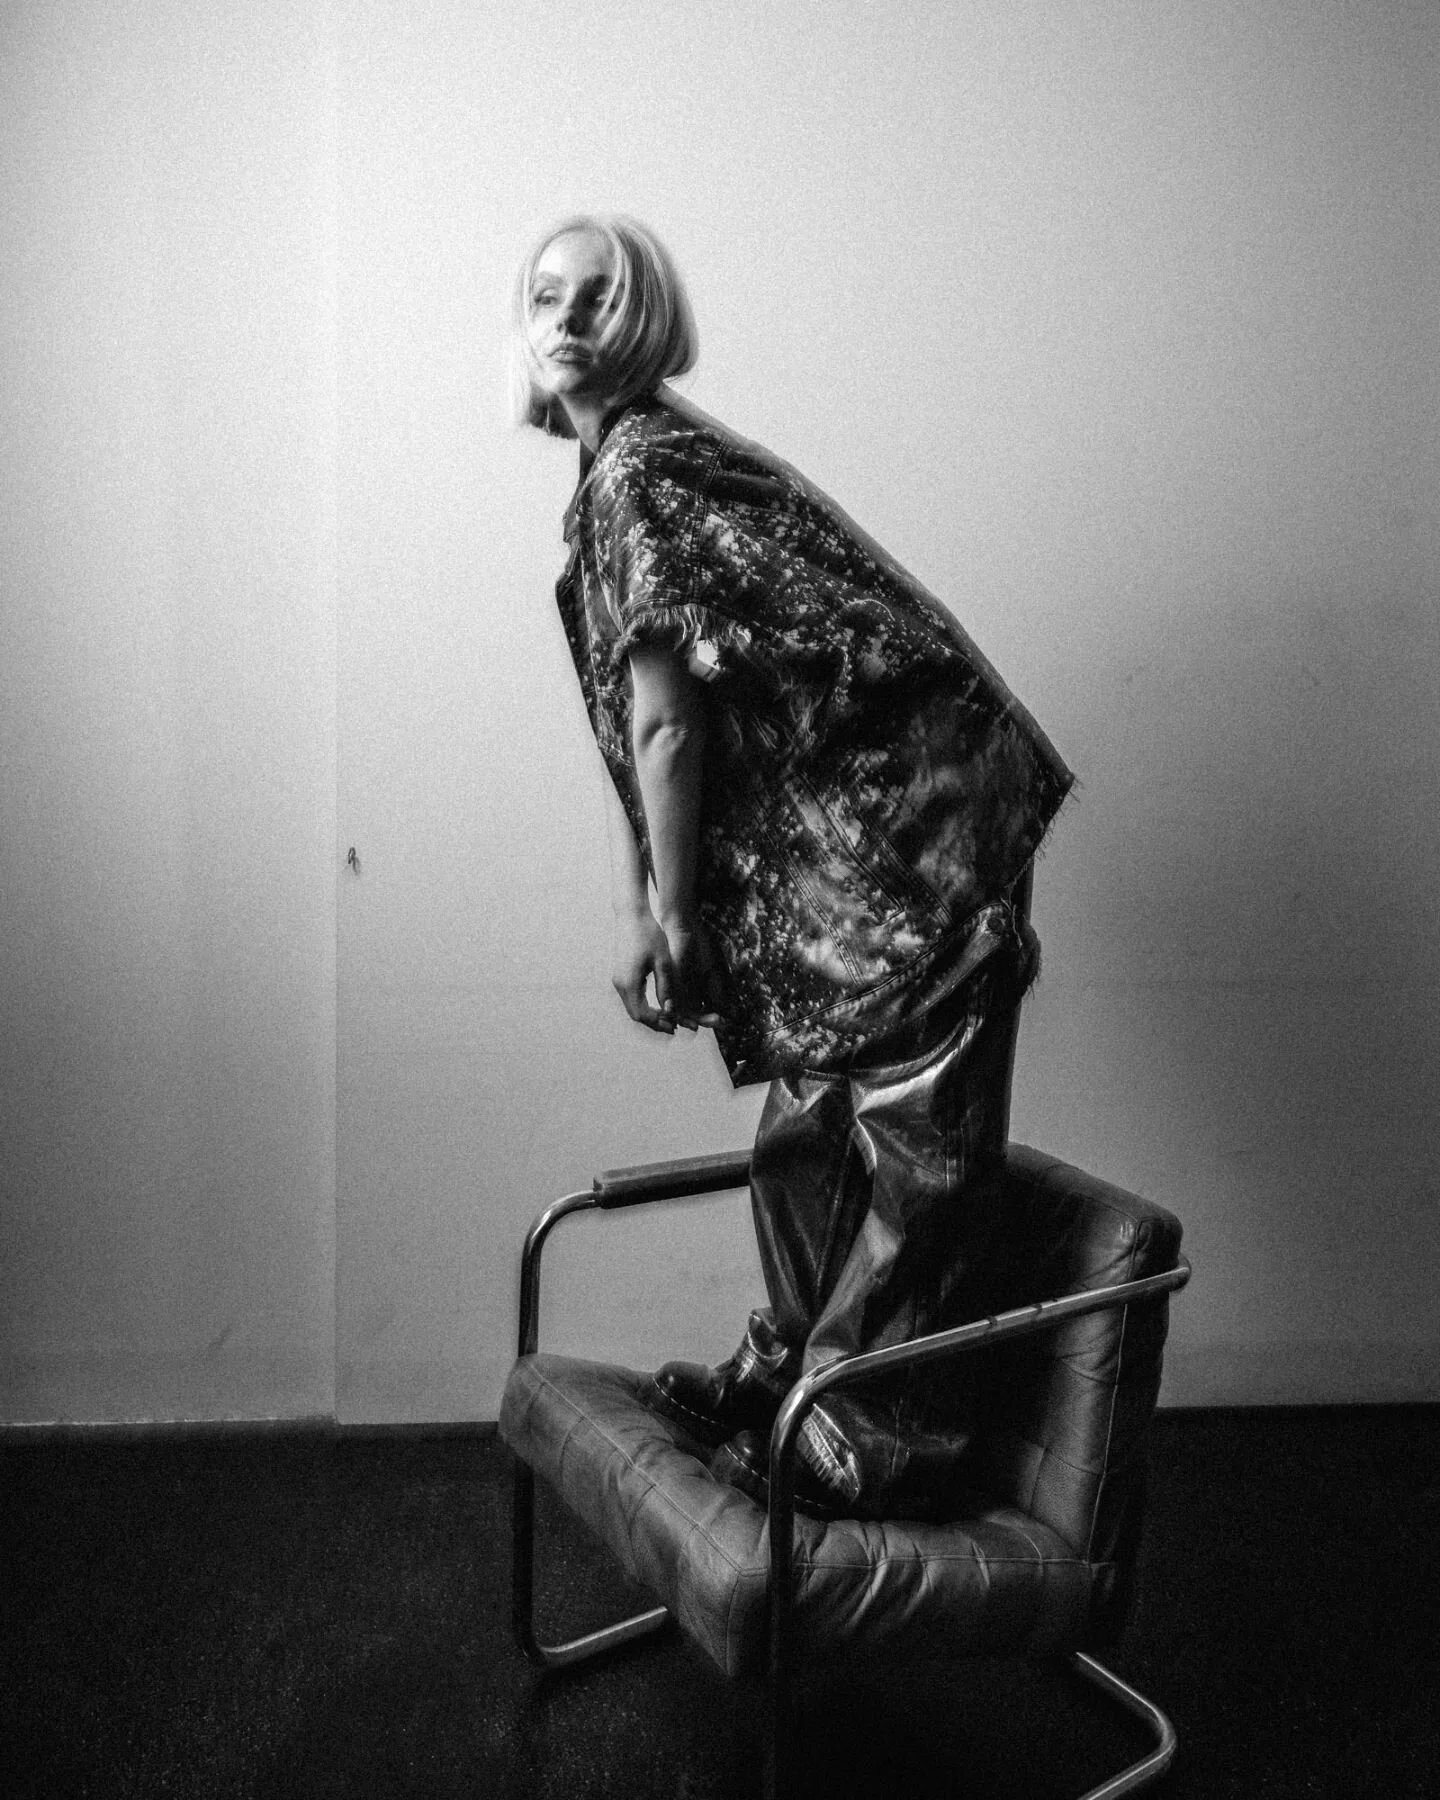 @lila.licious_ +  a chair = 💯
😂✌️
.
#shootfilmnotbullets #leicacamera #leicam #cameraartist #photoshoot #fashion #diesel